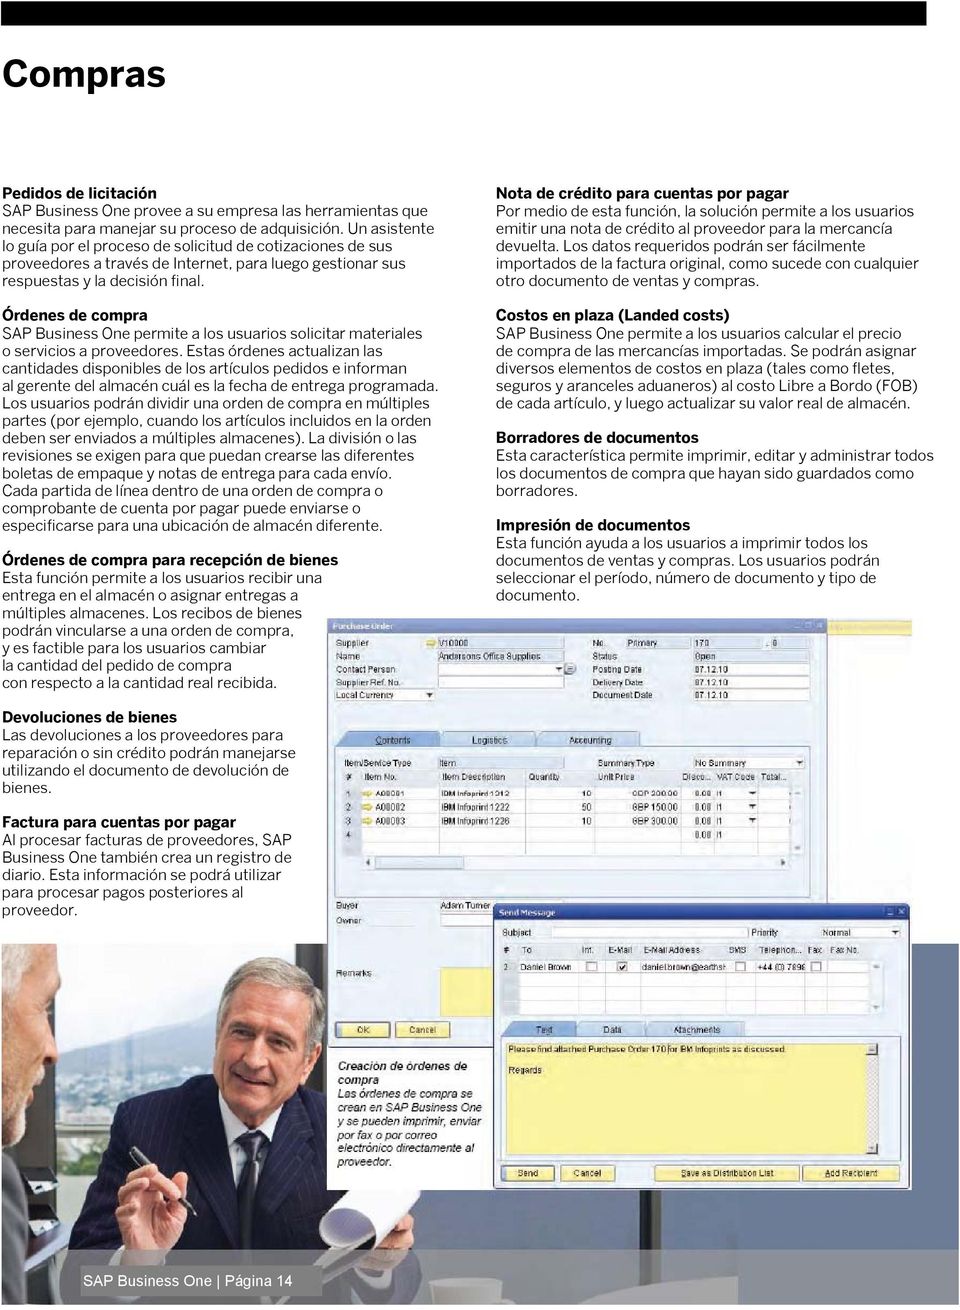 Órdenes de compra SAP Business One permite a los usuarios solicitar materiales o servicios a proveedores.